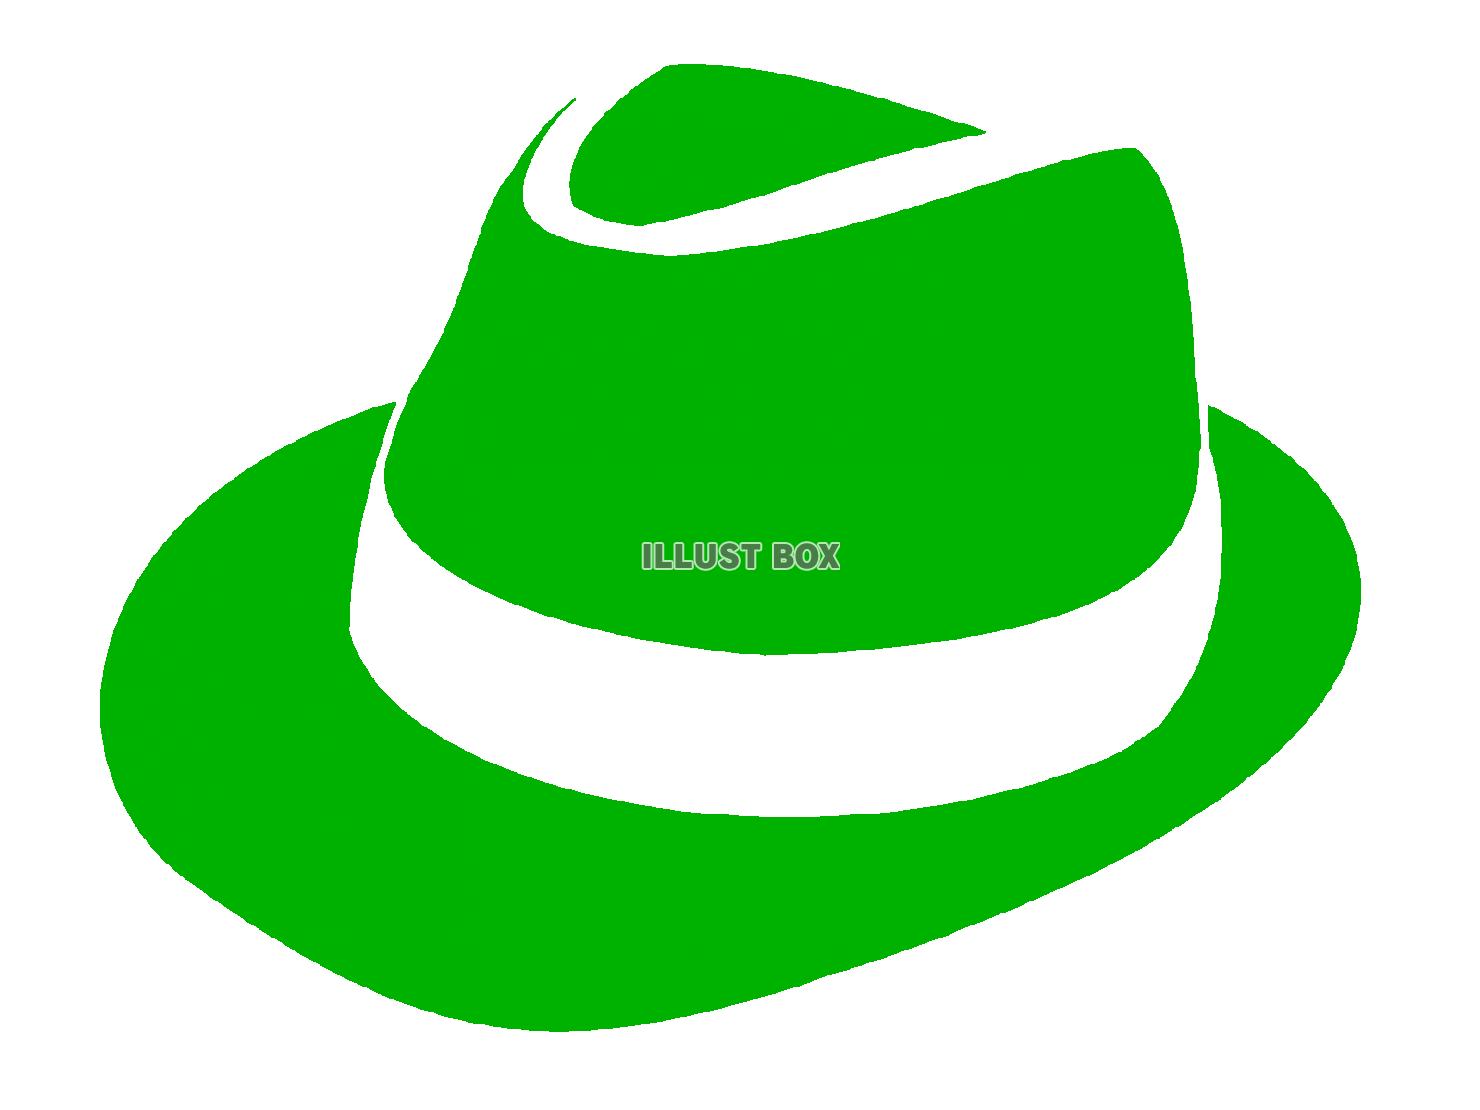 緑色の帽子のシルエットアイコン